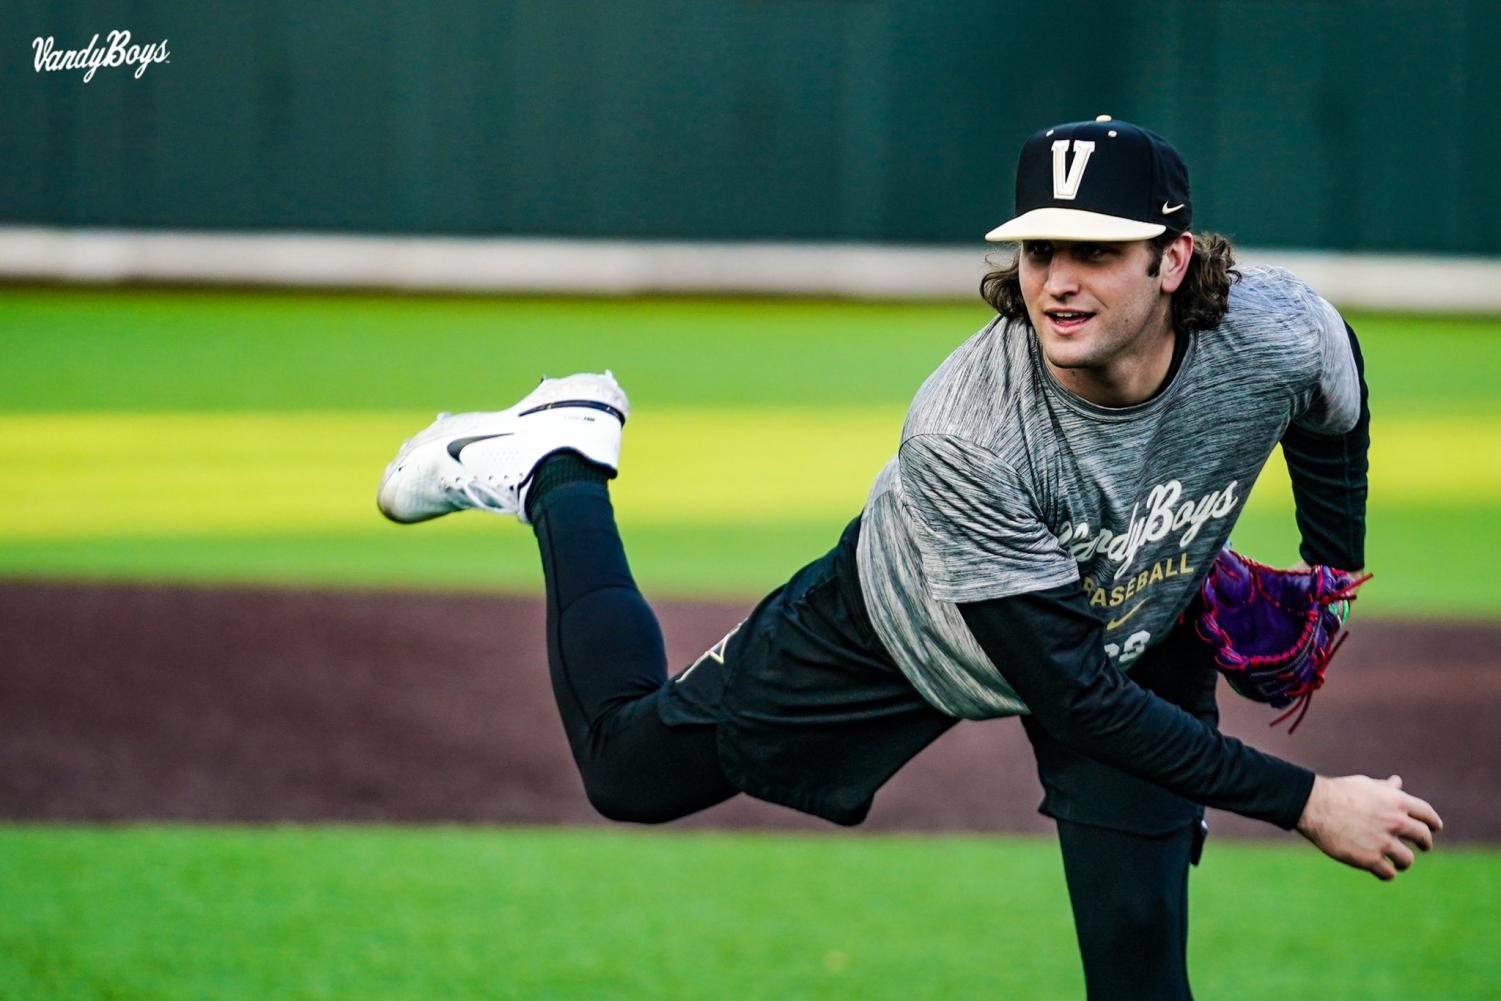 Vanderbilt baseball inspired look for Little League World Series team